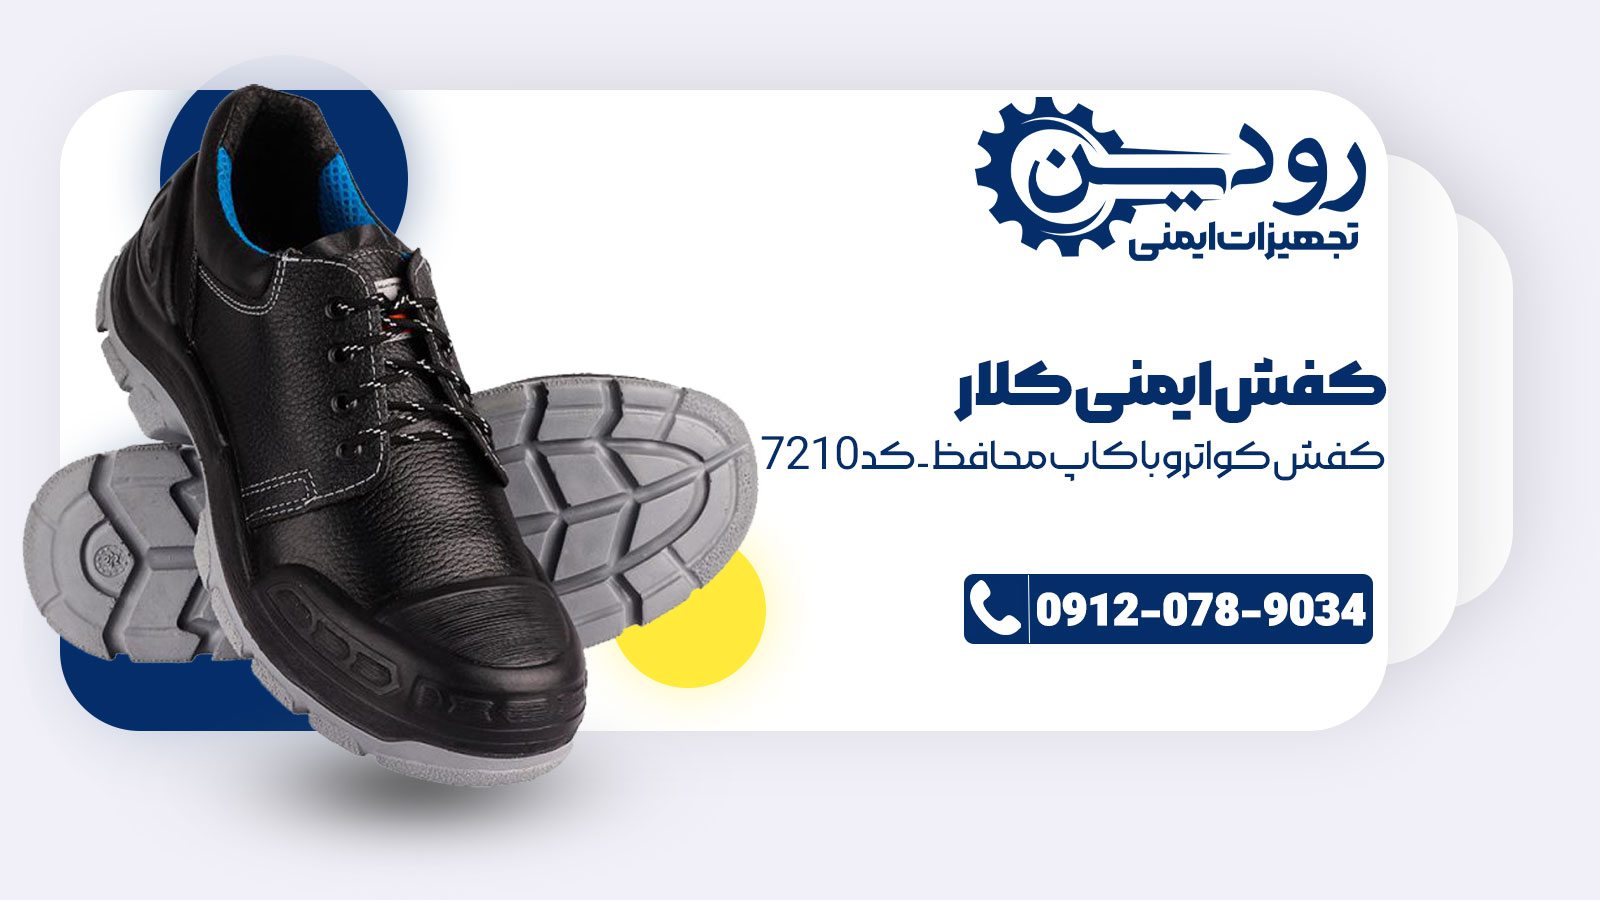 شرکت فروش کفش ایمنی کلار دارای نامی با سابقه درخشان است.